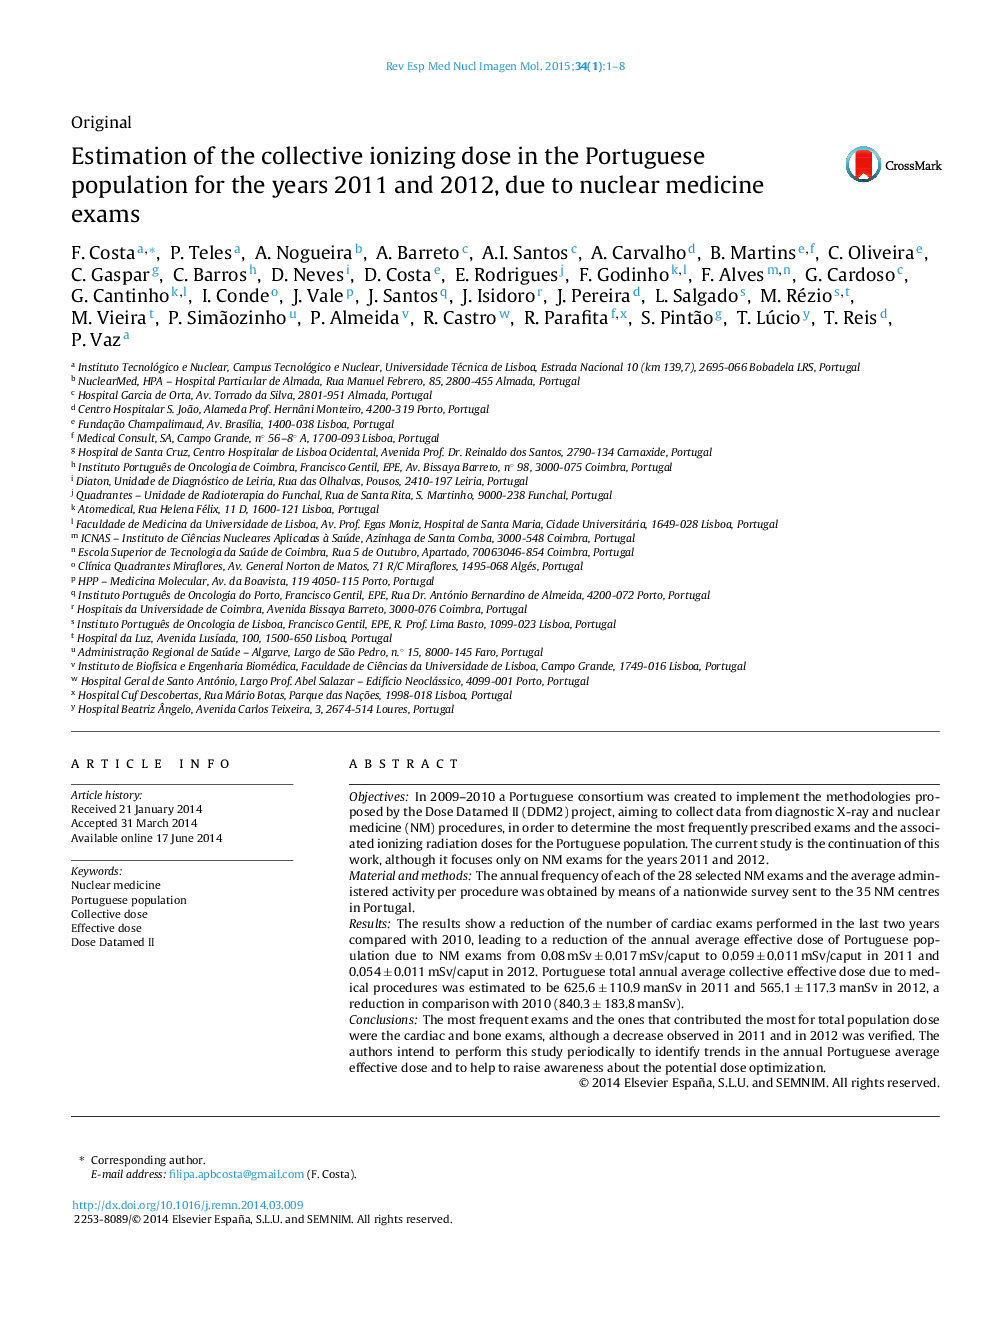 برآورد یونیزاسیون جمعی دوز در جمعیت پرتغال برای سال های 2011 و 2012 به علت امتحانات پزشکی هسته ای 